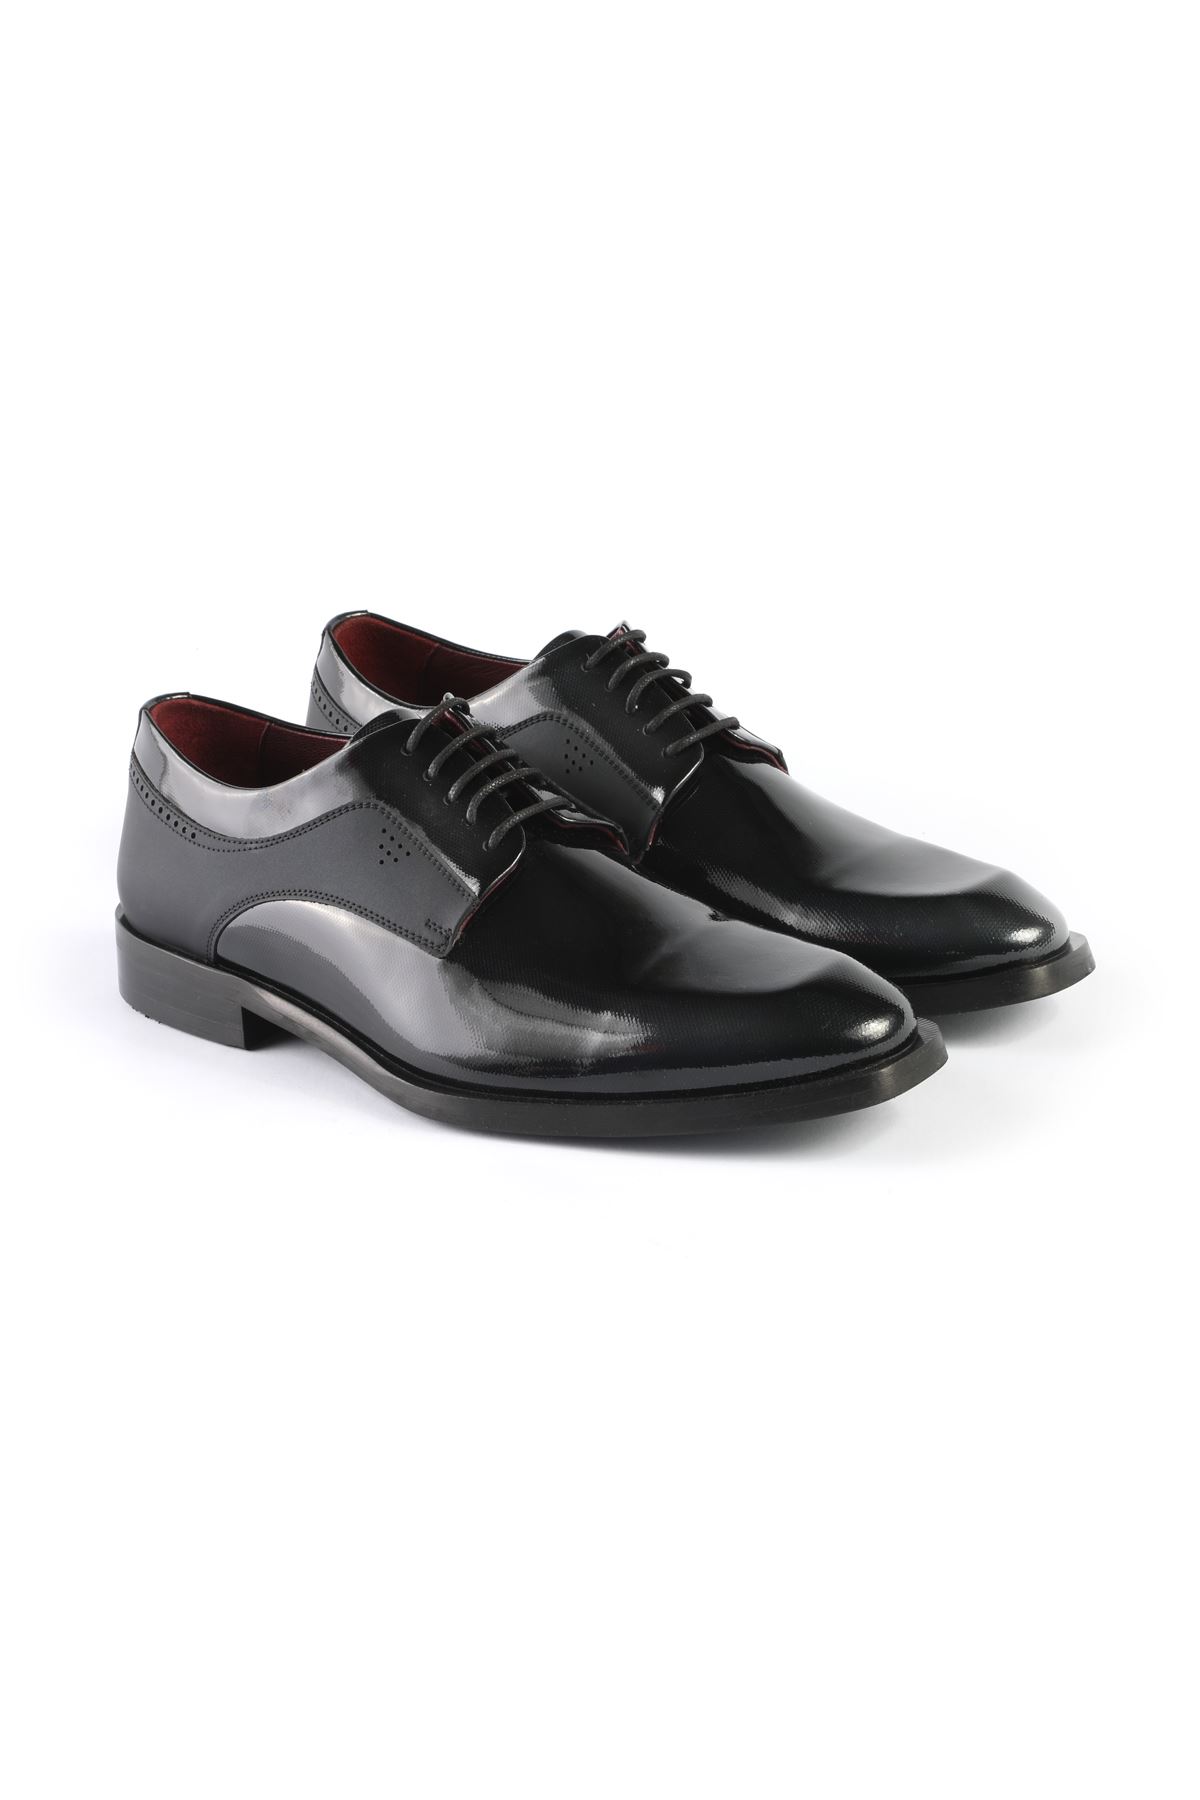 Libero L3252 Black Classic Shoes